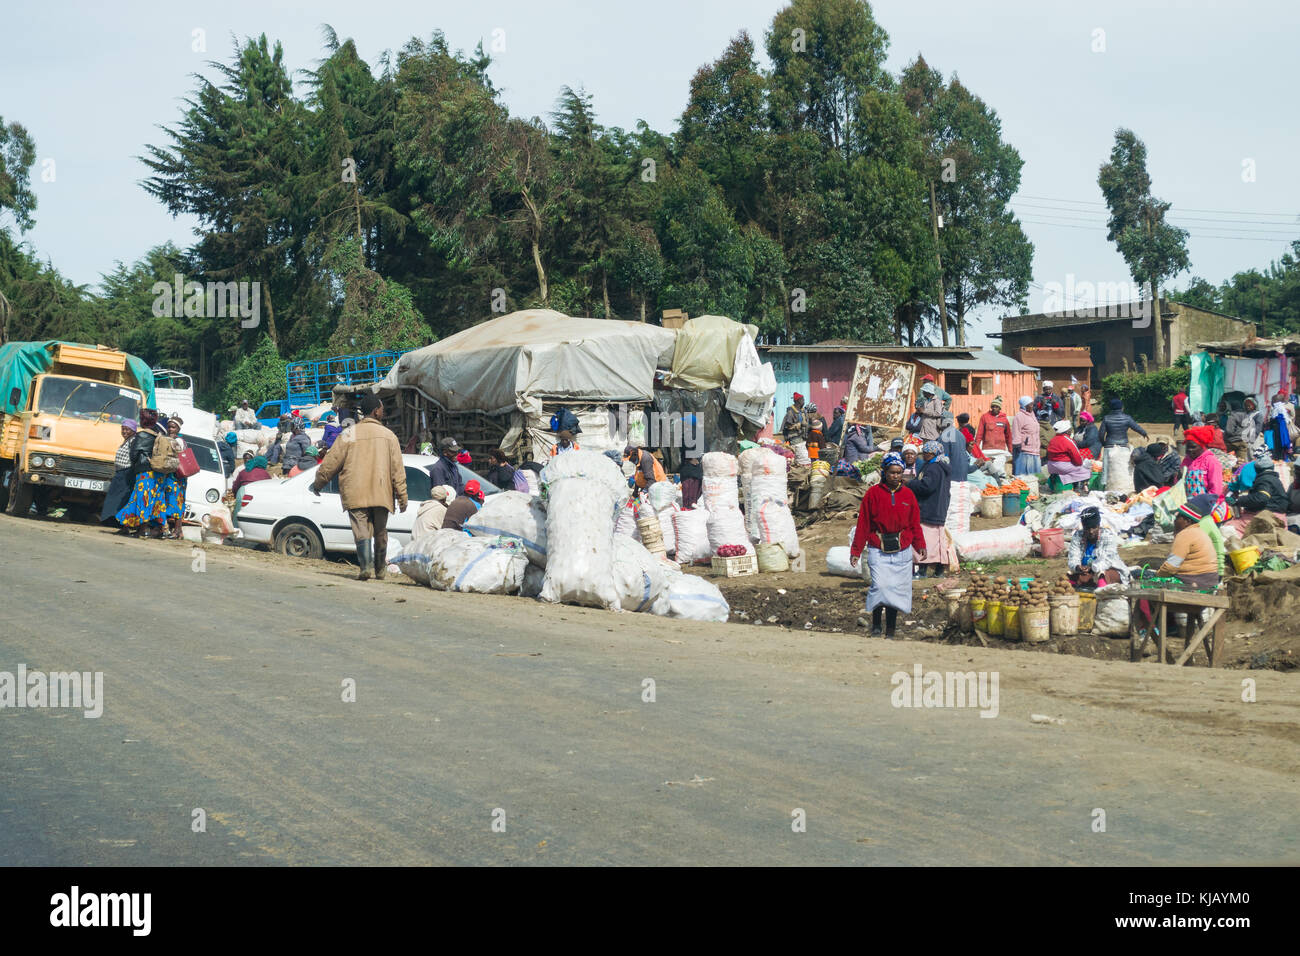 Un affollato mercato di fortuna nella piccola città lungo la strada con produrre sul display e persone camminare, Kenya, Africa orientale Foto Stock